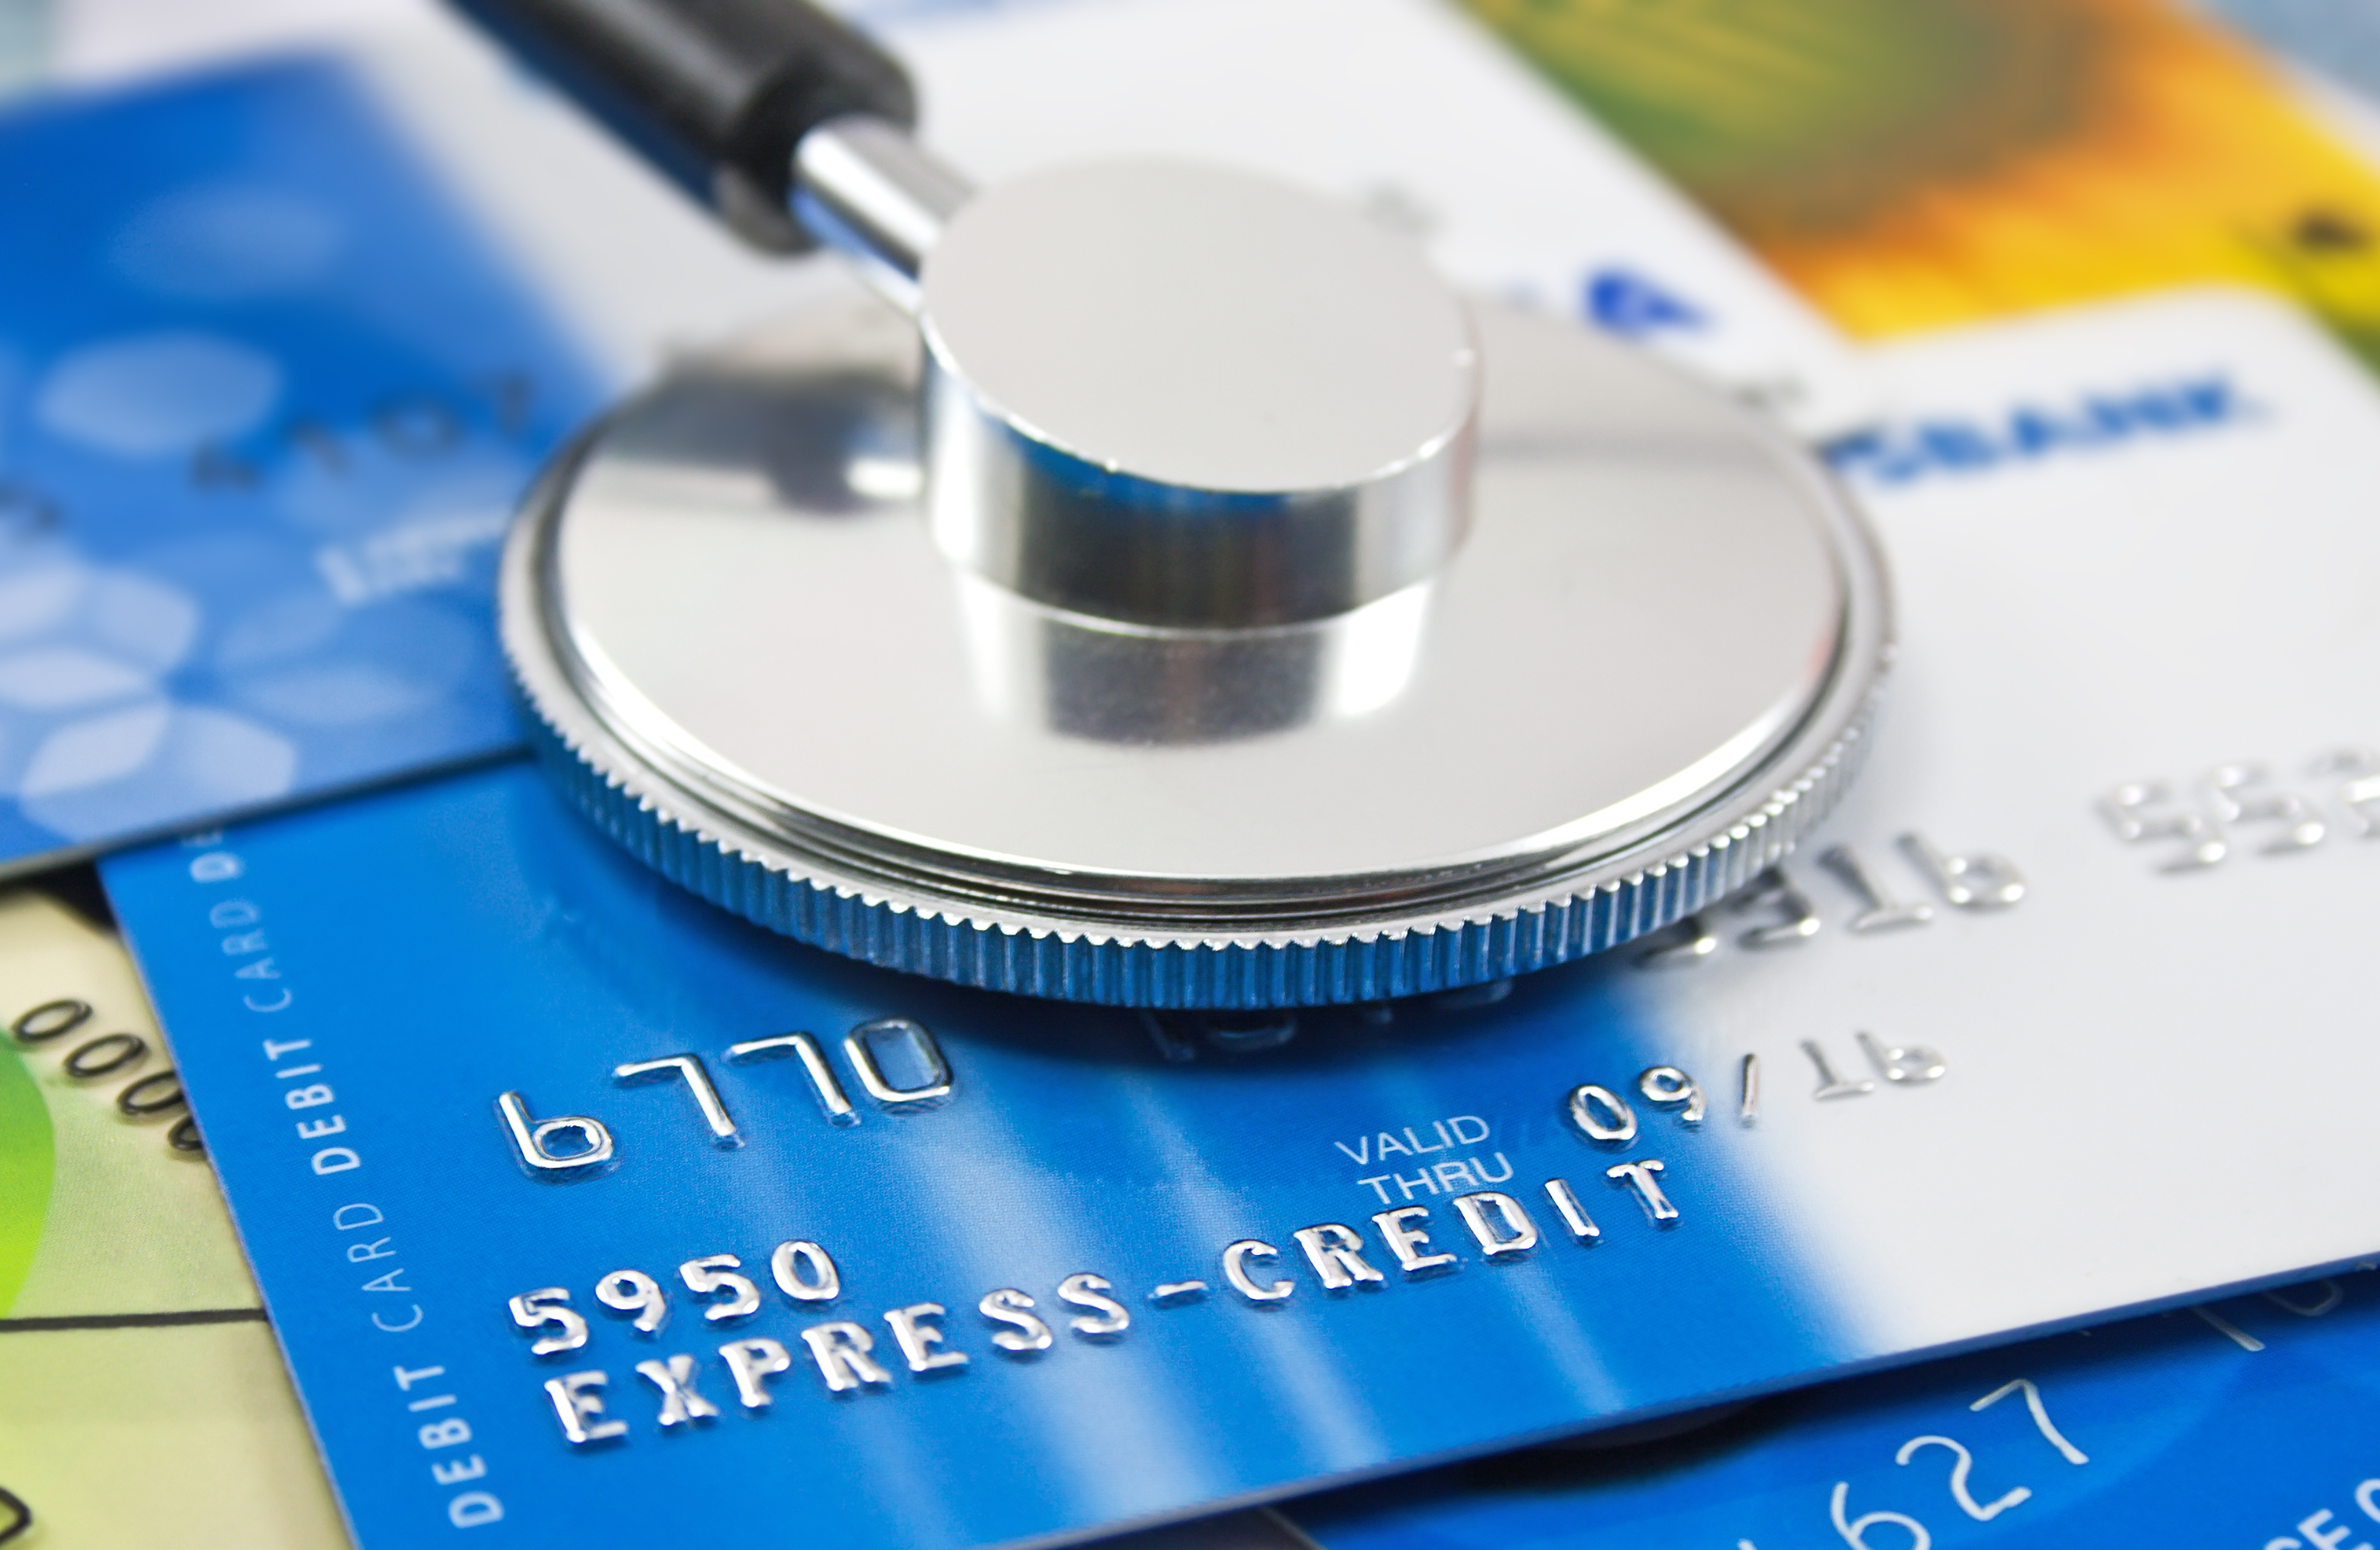 Votre cote de crédit peut vous coûter très cher si vous ne la vérifiez pas!